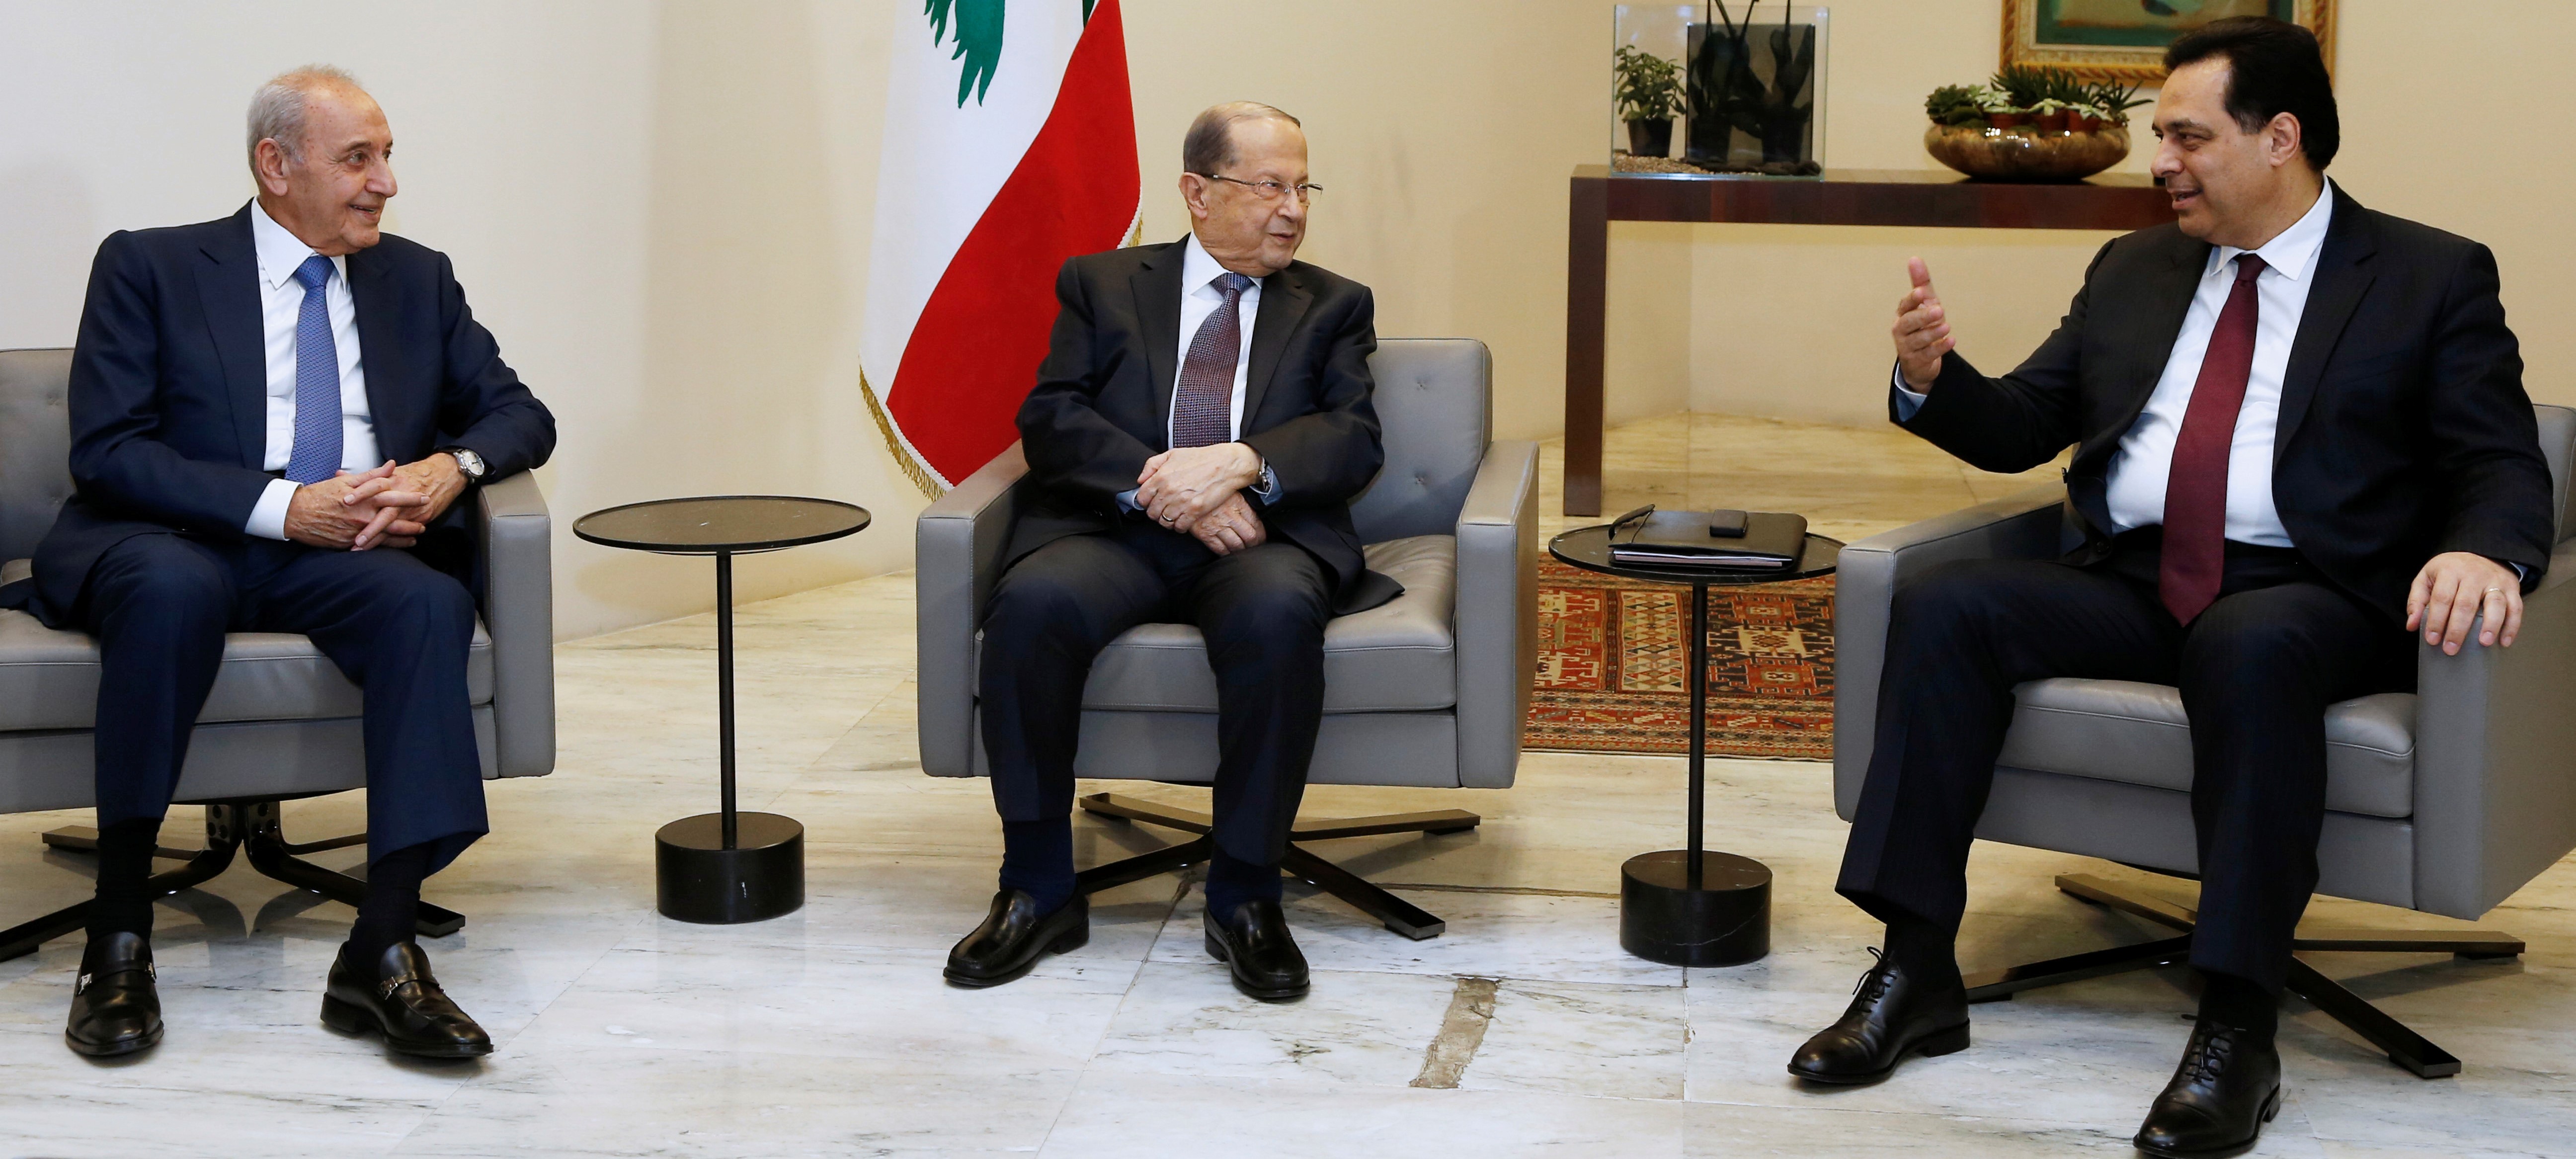 الحكومة اللبنانية تعقد اجتماعها الأول وتنشر صورتها التذكارية